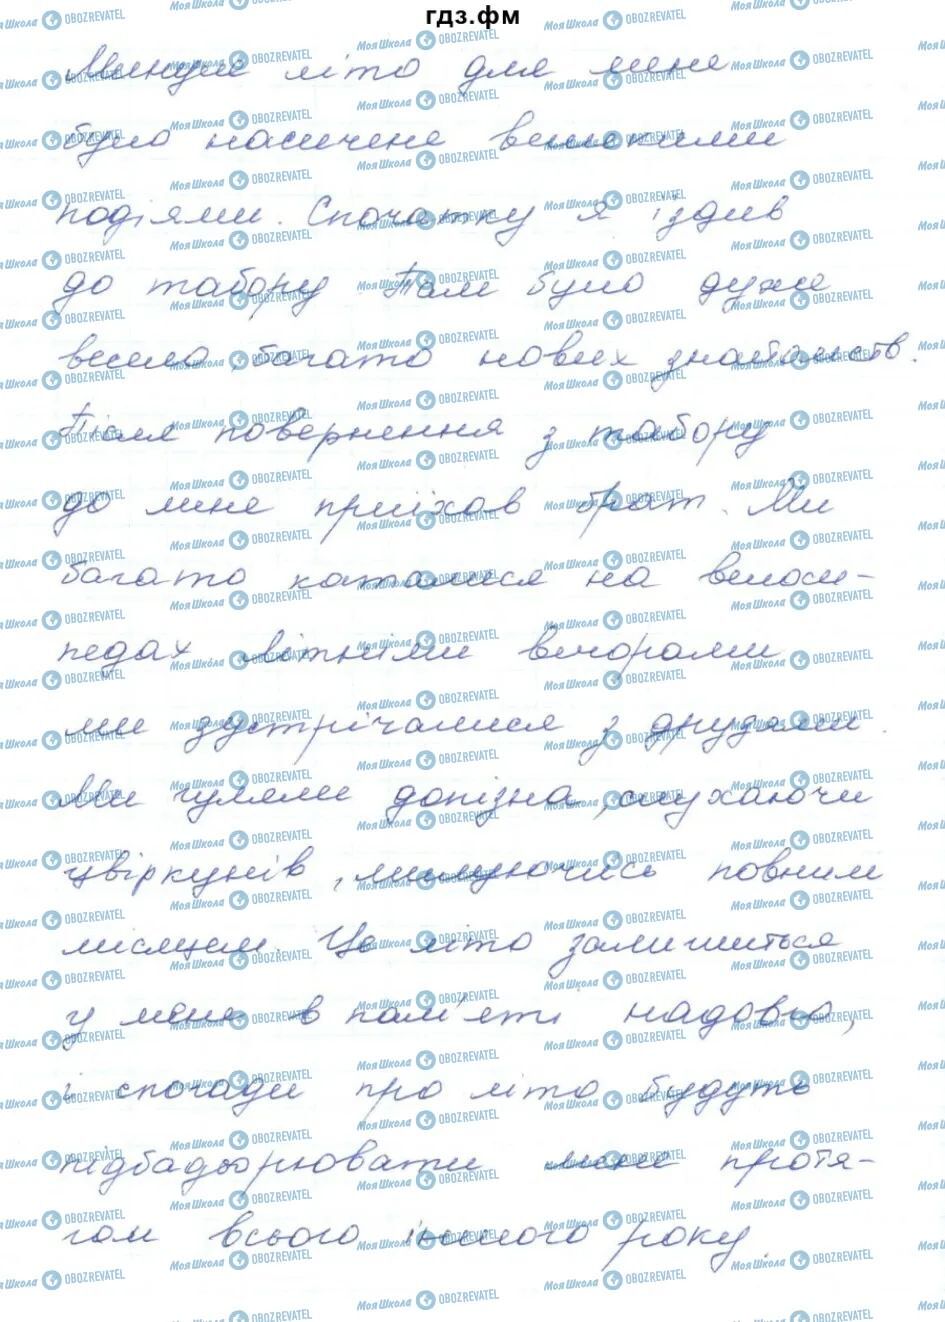 ГДЗ Українська мова 5 клас сторінка 549